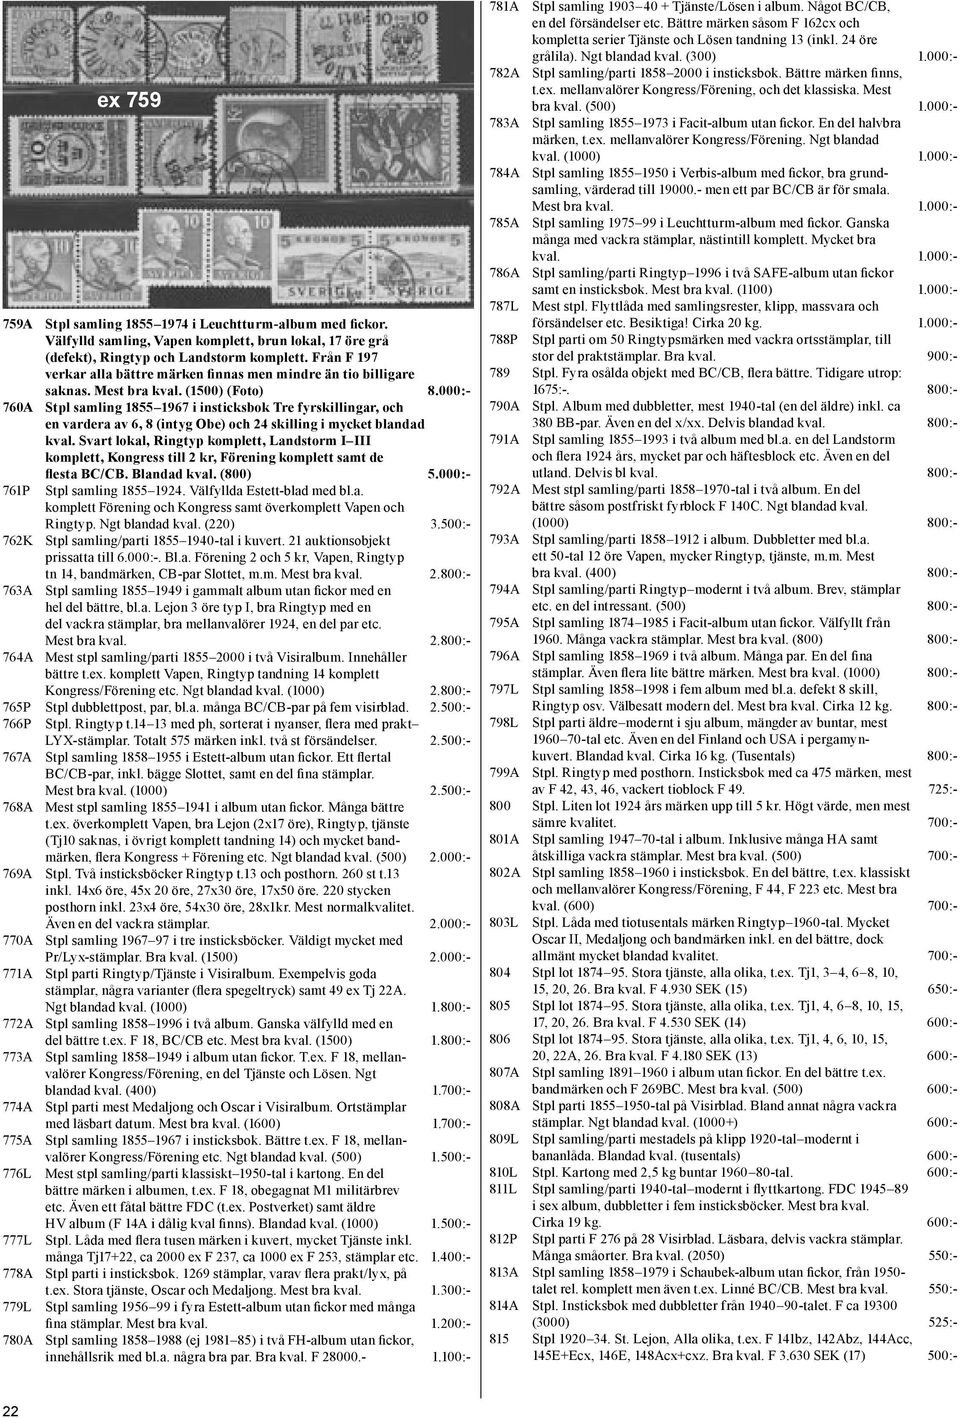 000:- 760A Stpl samling 1855 1967 i insticksbok Tre fyrskillingar, och en vardera av 6, 8 (intyg Obe) och 24 skilling i mycket blandad kval.